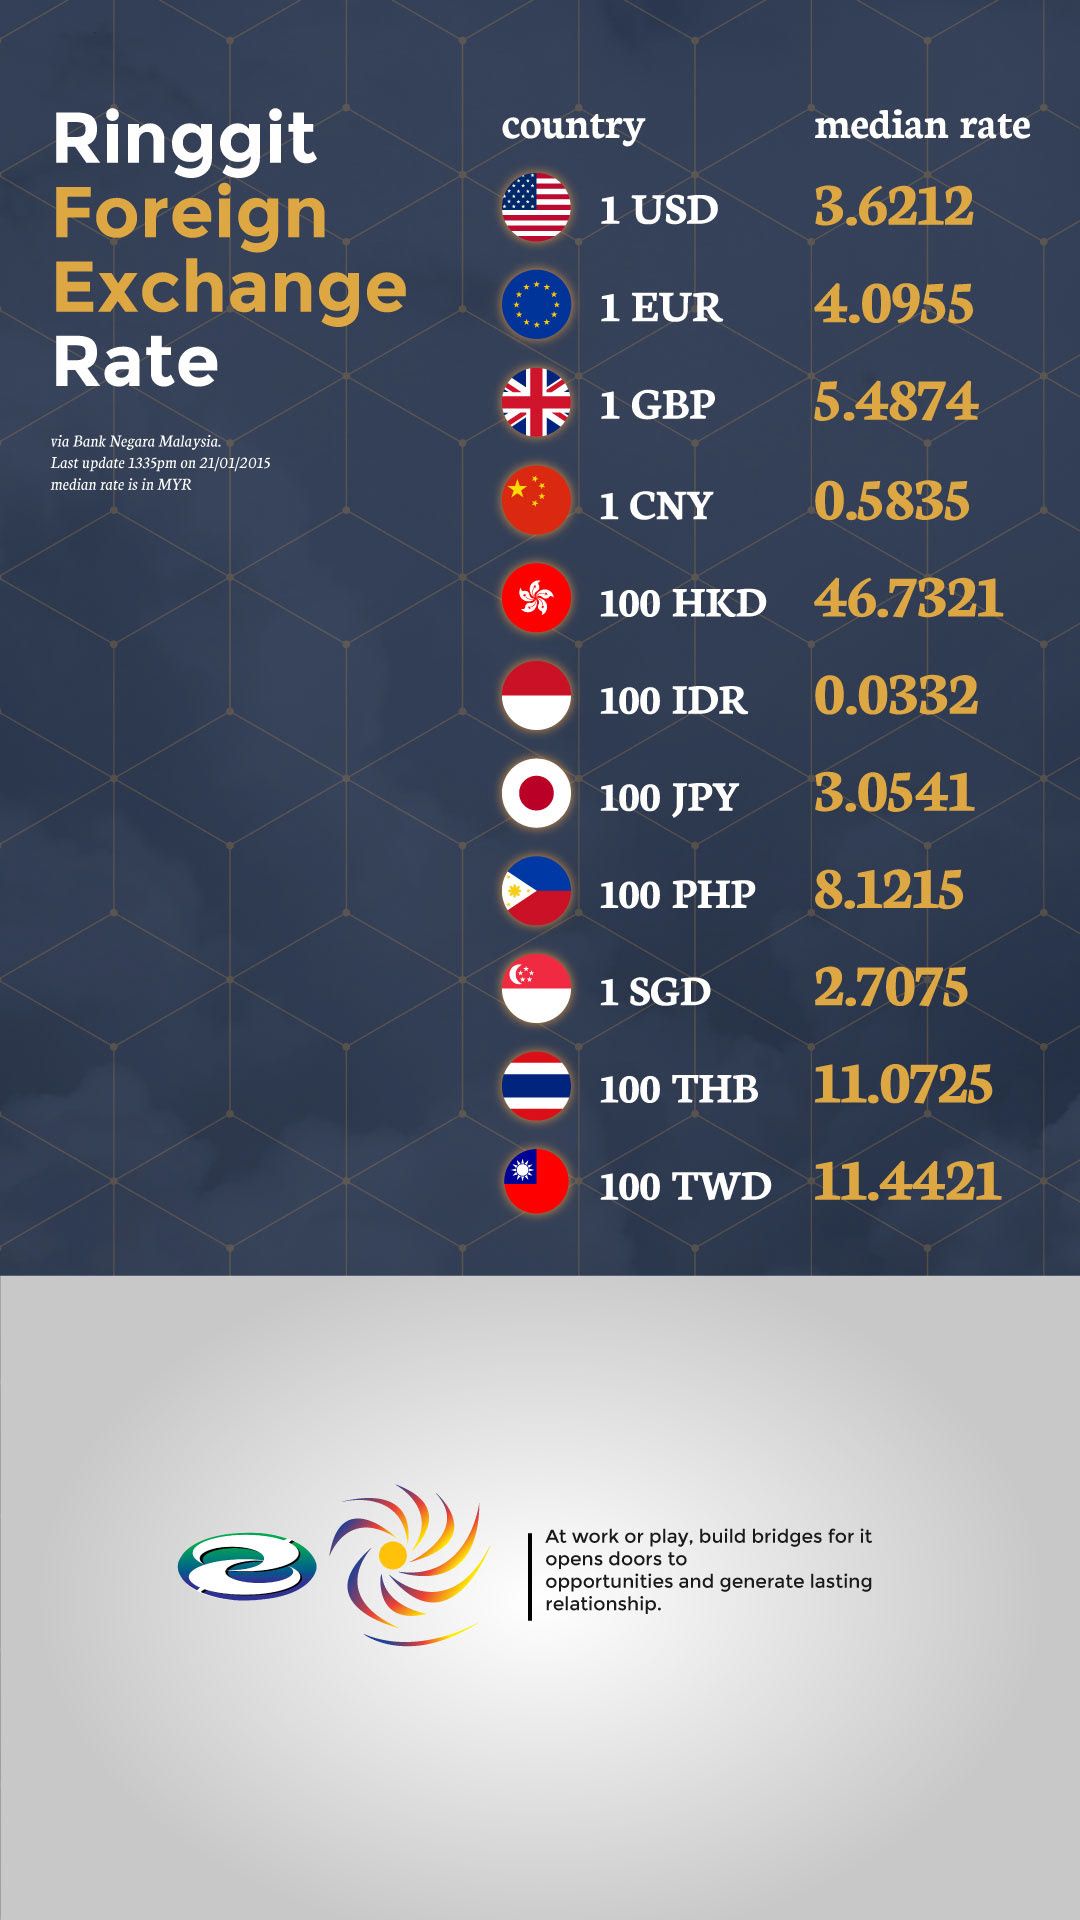 Negara rate bank exchange Exchange Rate